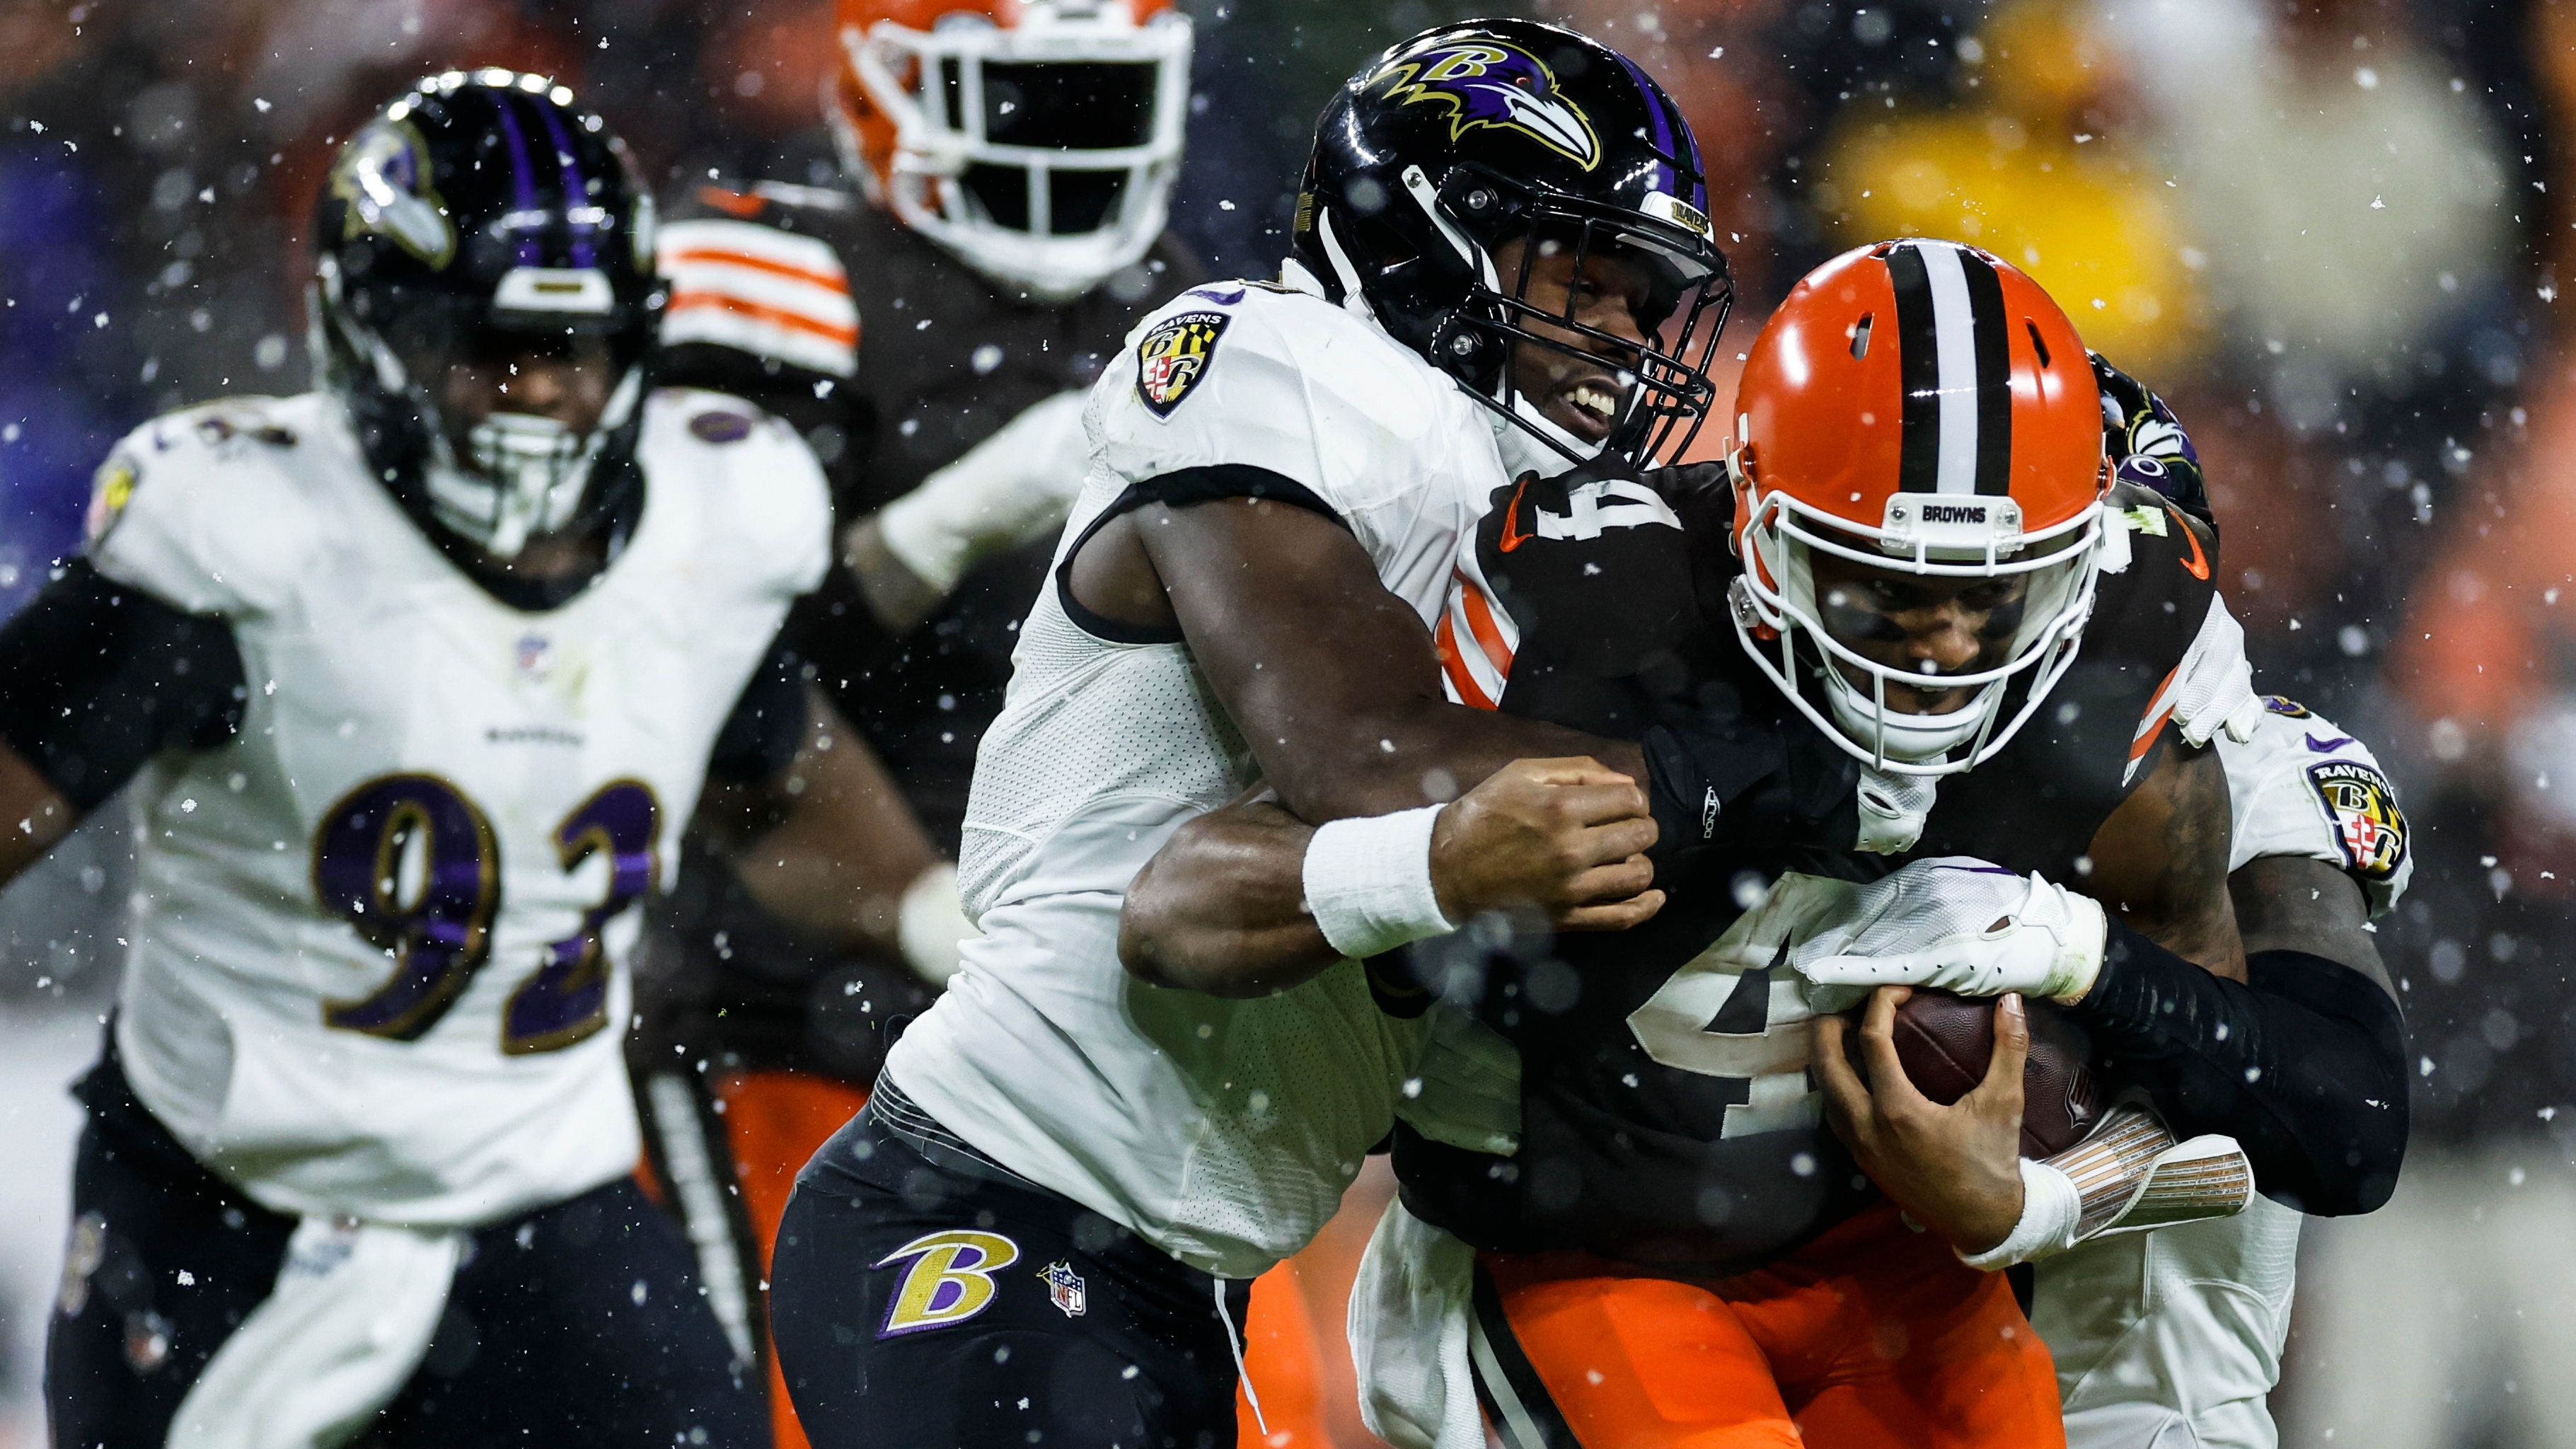 Event Feedback: Cleveland Browns - NFL vs Baltimore Ravens